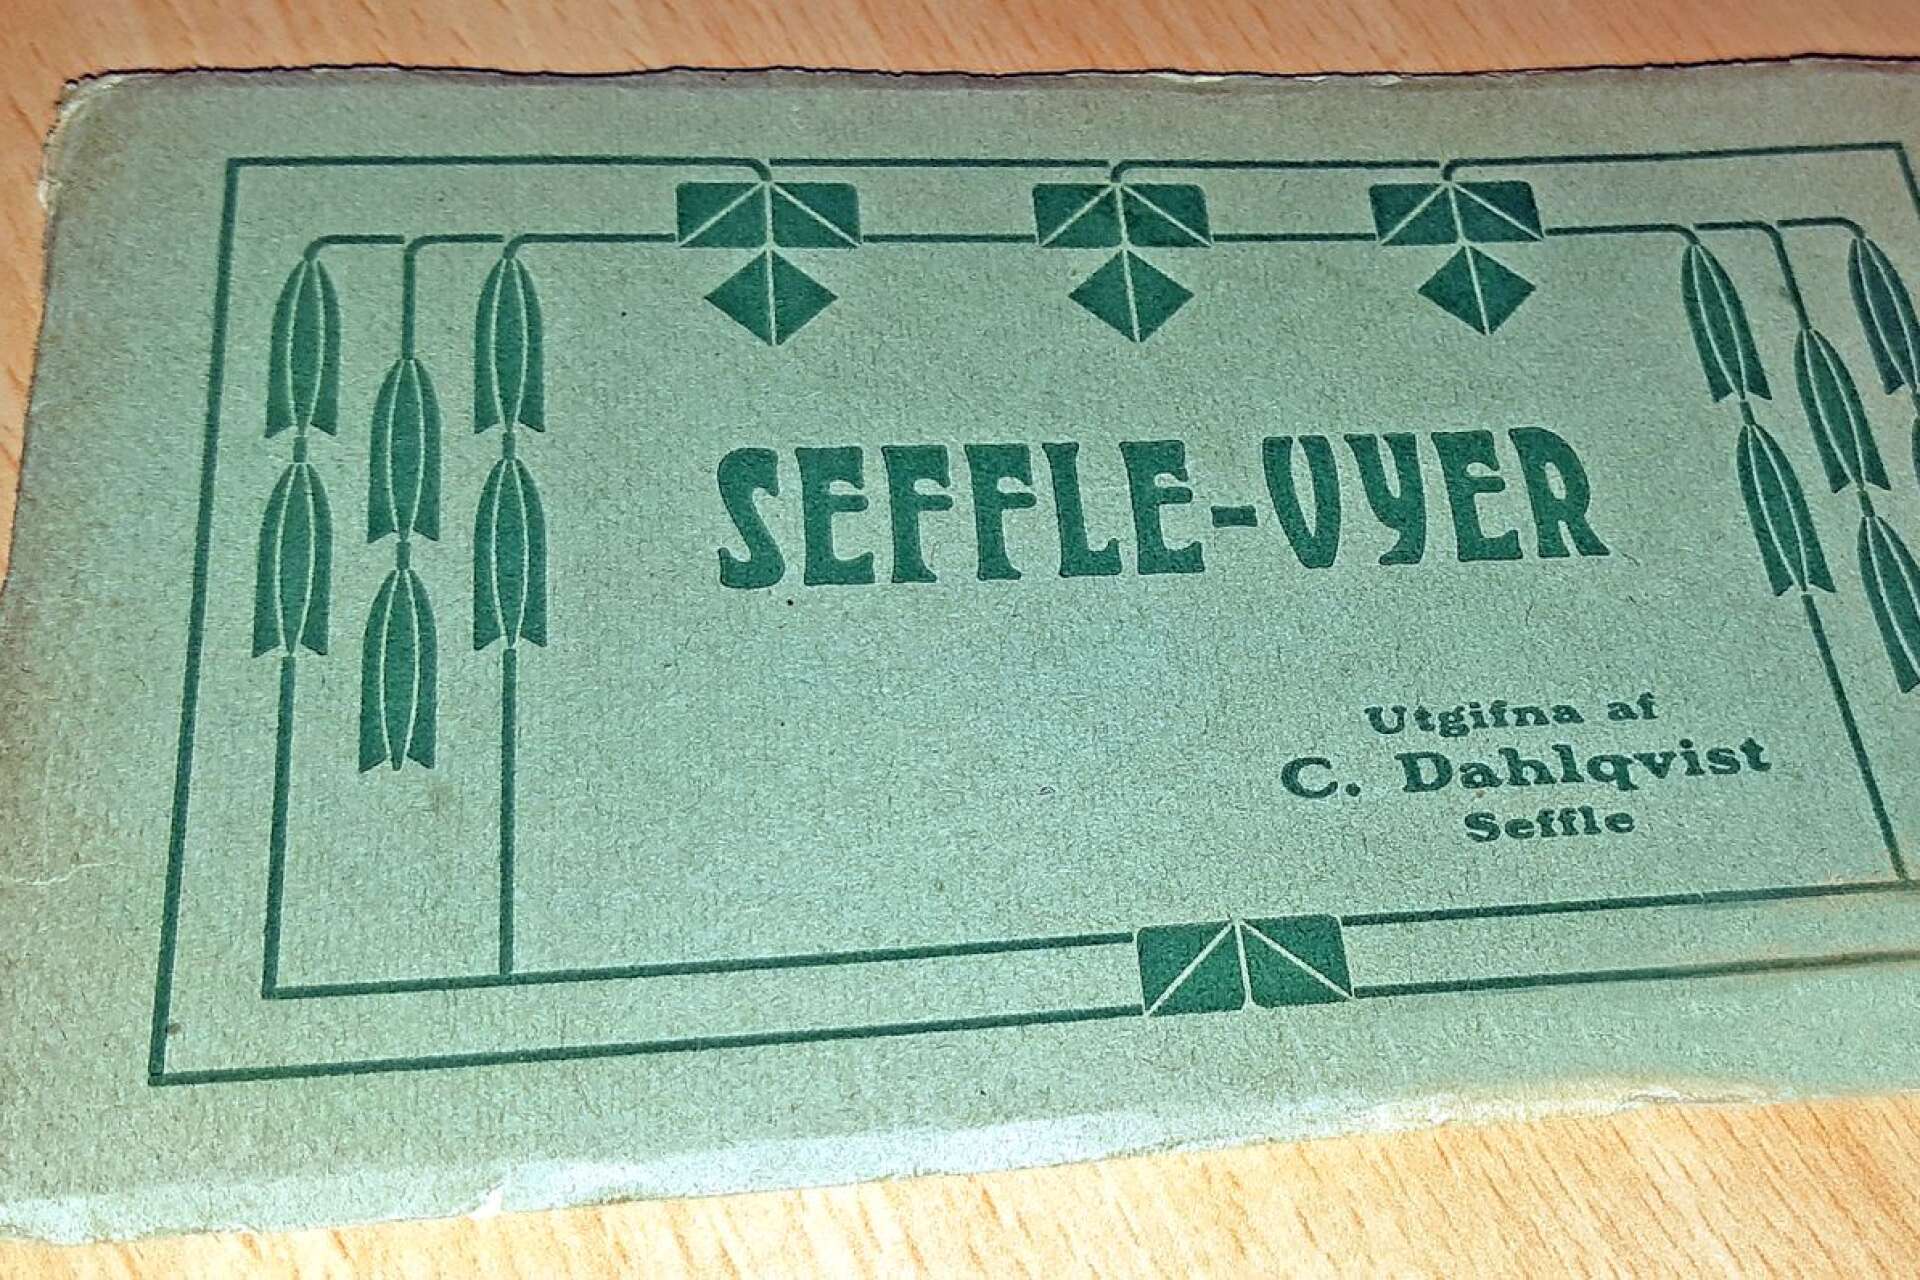 Den som ville ha en souvenir från Säffle i början av förra seklet kunde hos Dahlqvist köpa ett häfte med ”Seffle-vyer”. Häftet bör ha tillkommit mellan 1906 och 1909.